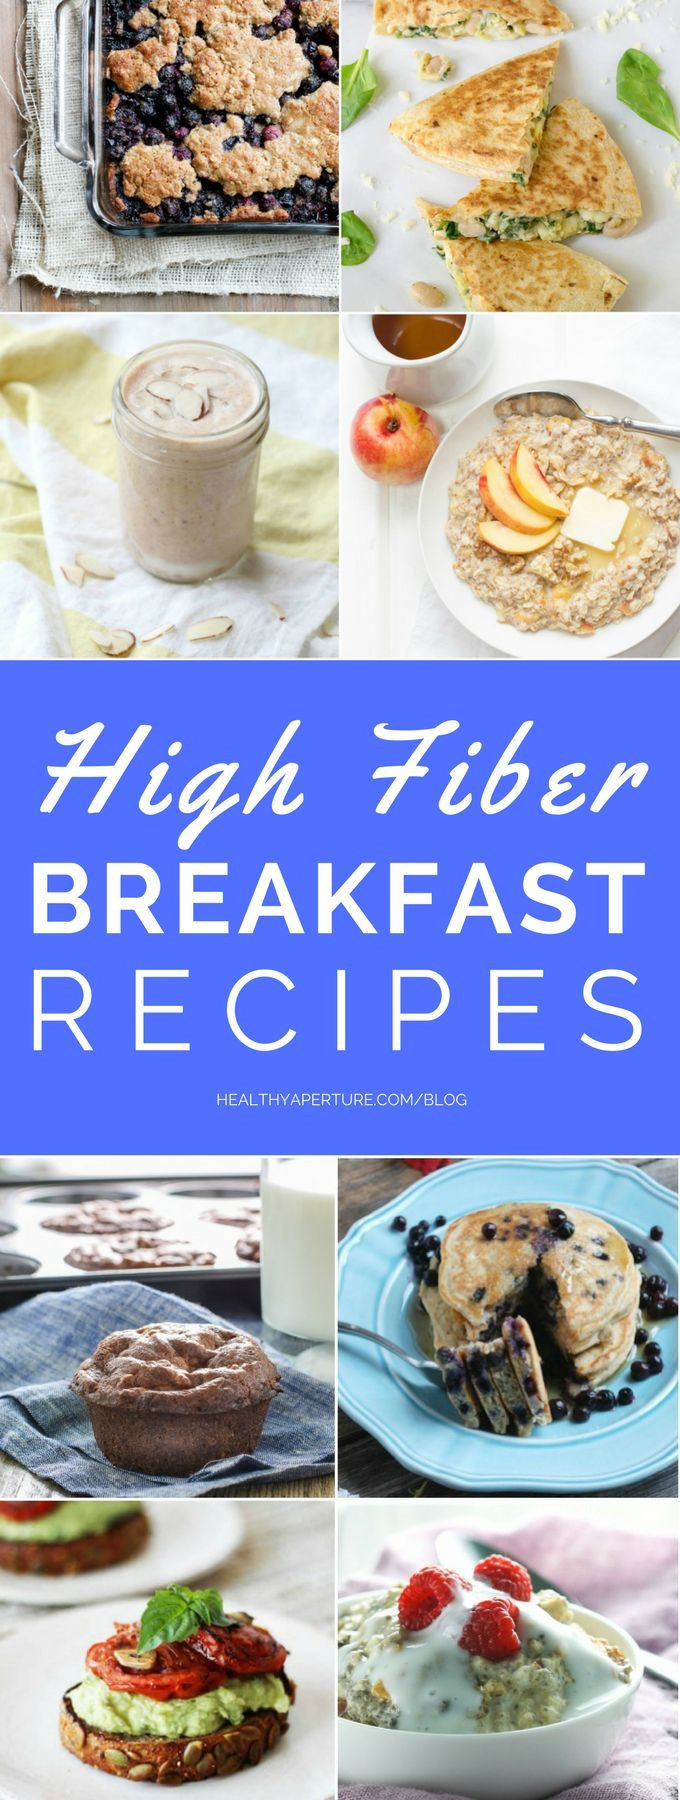 High Fiber Chicken Recipes
 Best 25 High fiber foods ideas on Pinterest